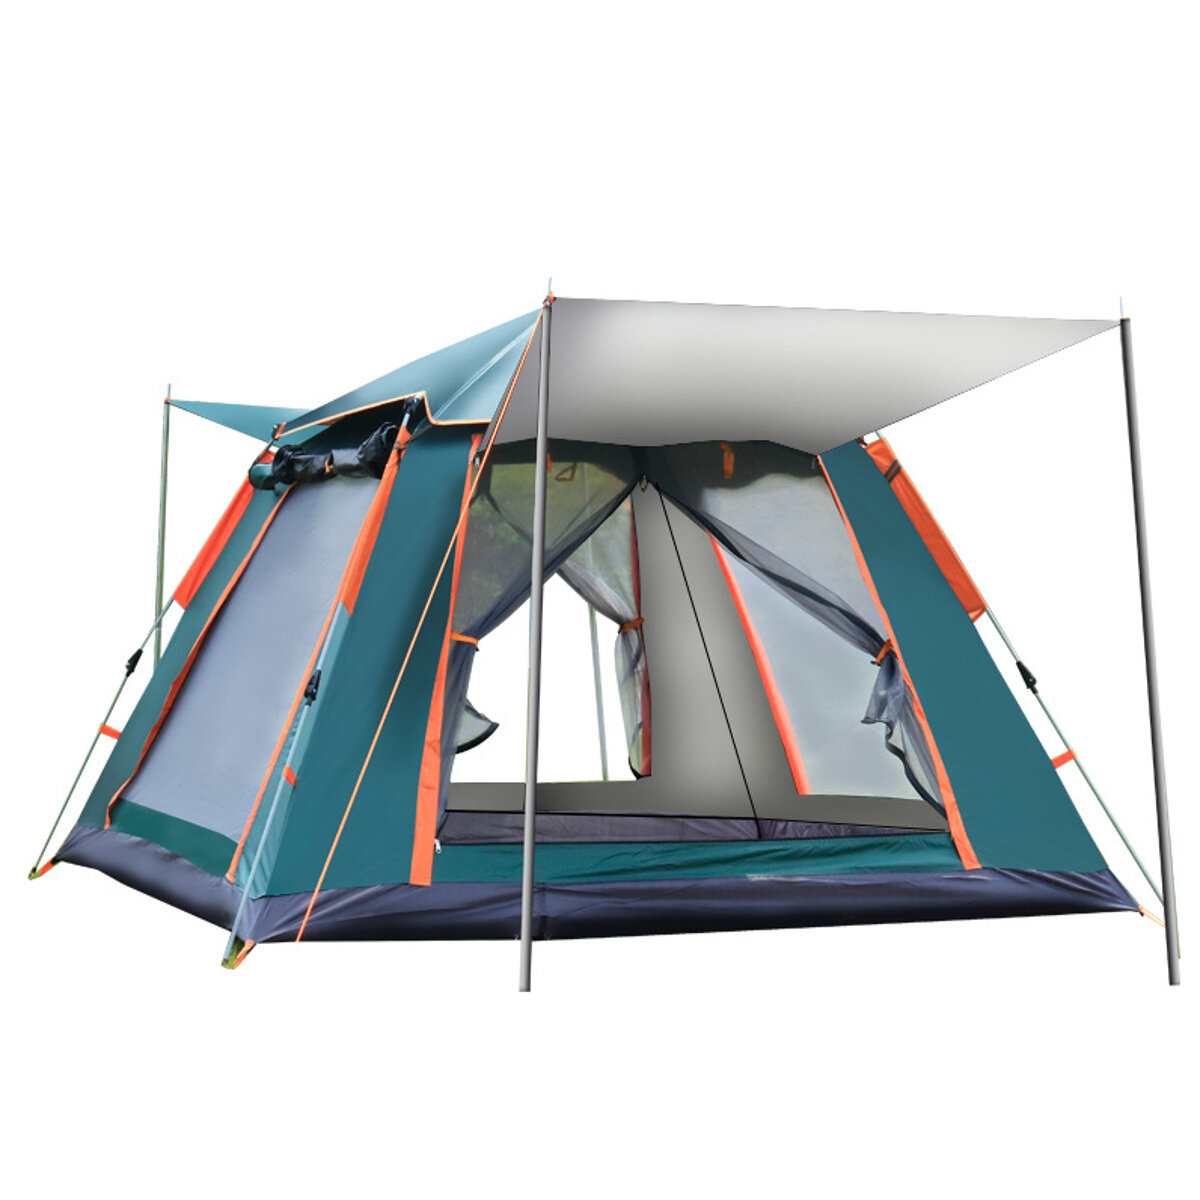 IPRee® 6-7 أشخاص خيمة أوتوماتيكية بالكامل غراء فضي في الهواء الطلق التخييم الأسرة نزهة خيمة السفر